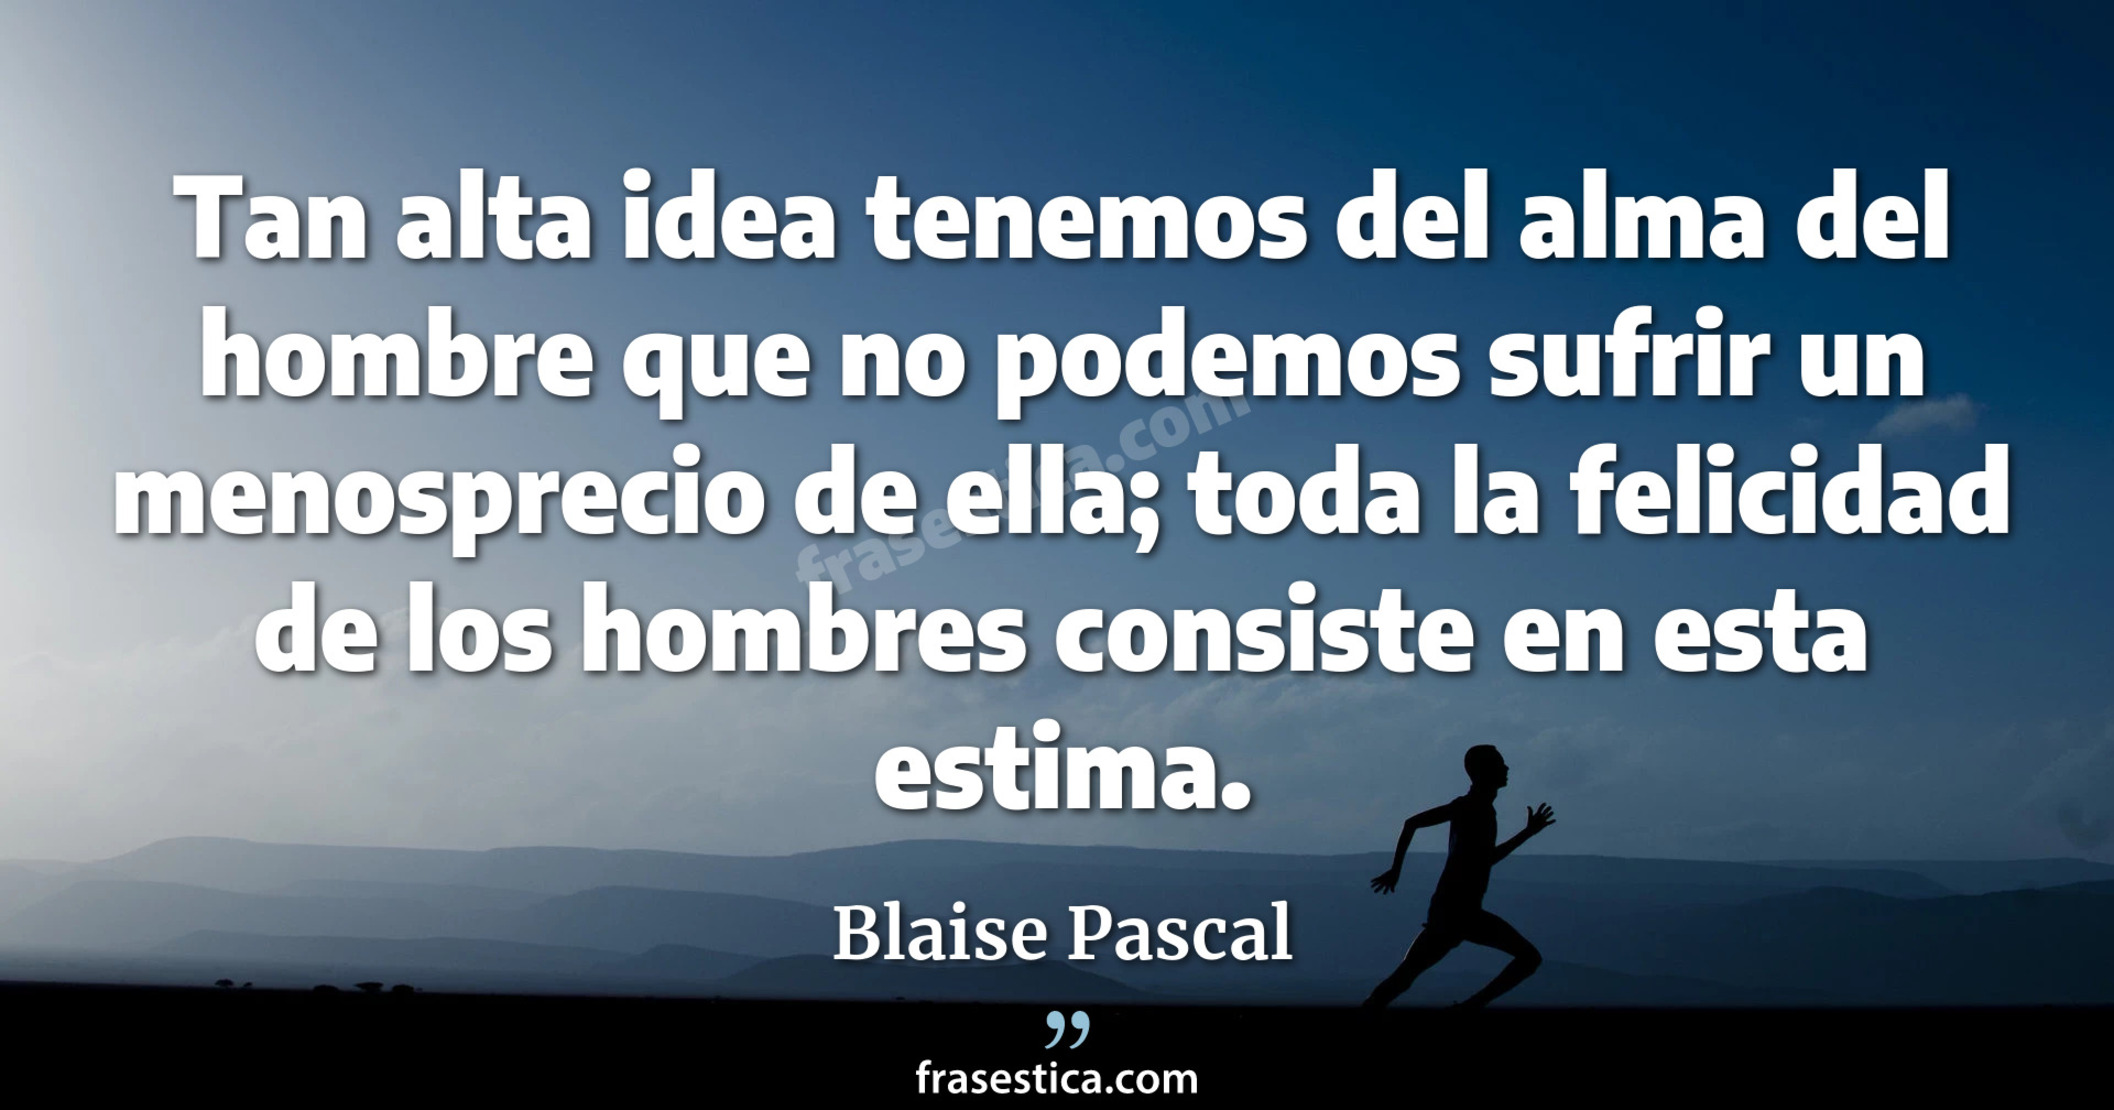 Tan alta idea tenemos del alma del hombre que no podemos sufrir un menosprecio de ella; toda la felicidad de los hombres consiste en esta estima. - Blaise Pascal